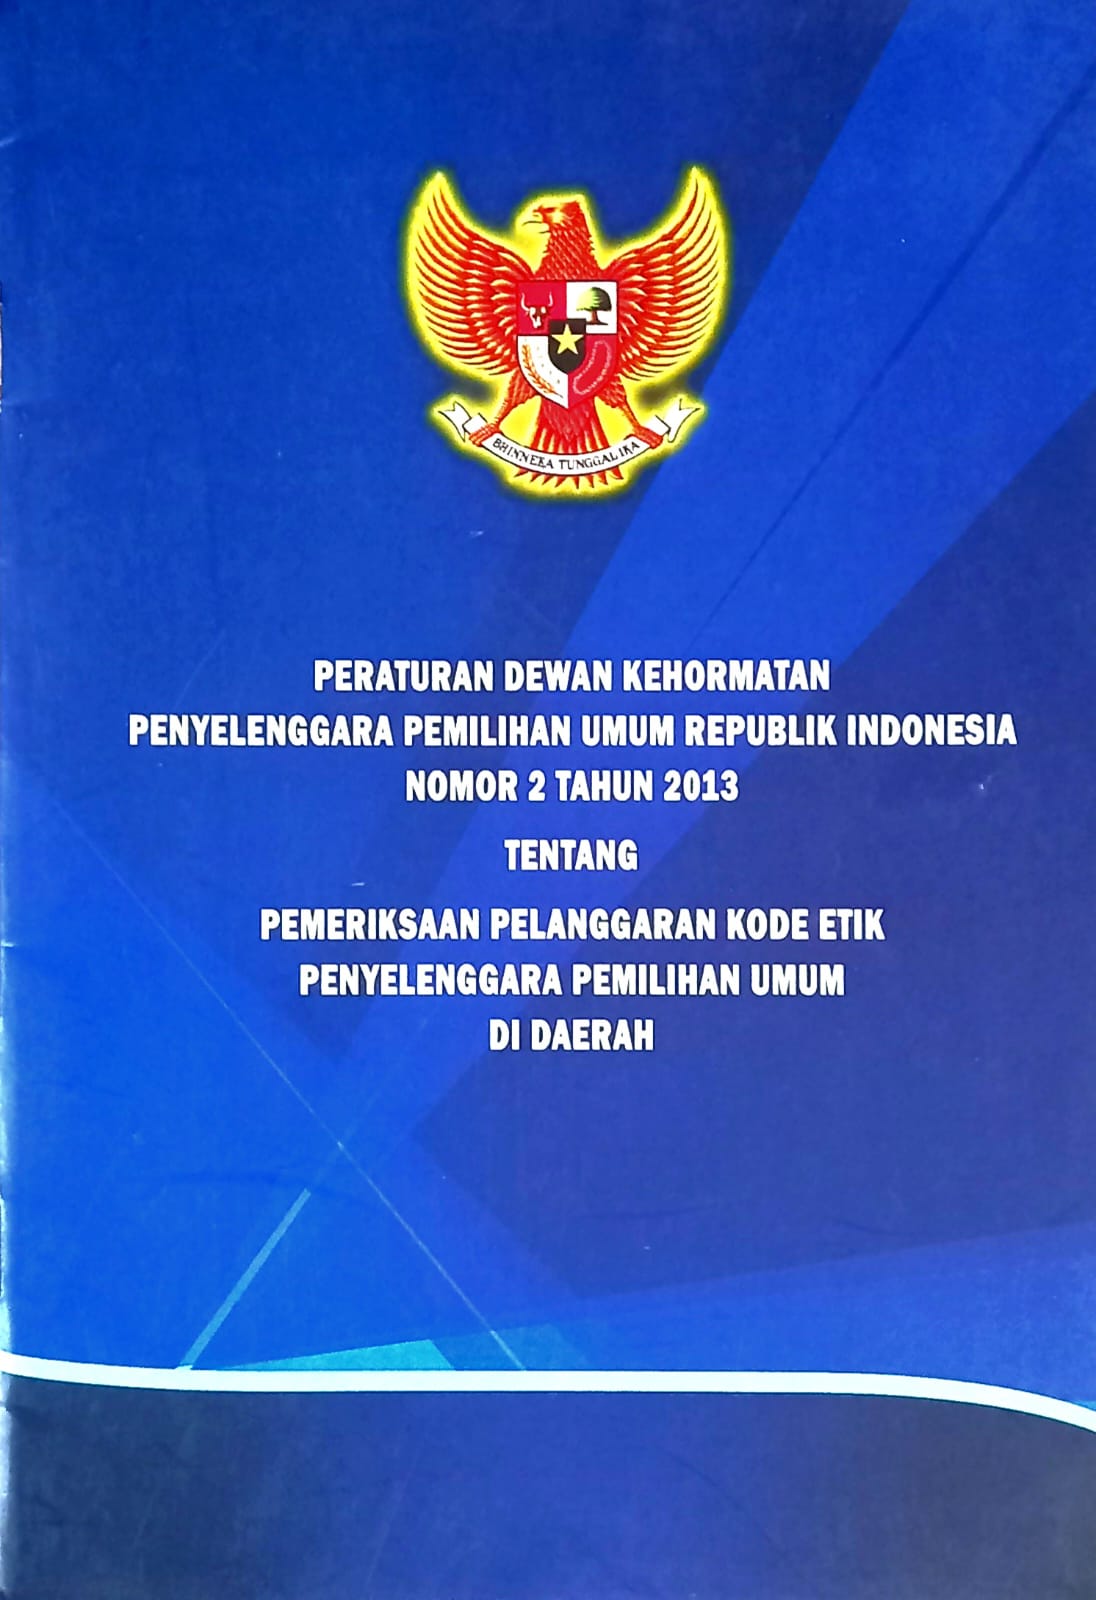 PERATURAN DEWAN KEHORMATAN PENYELENGGARA PEMILIHAN UMUM REPUBLIK INDONESIA NOMOR 2 TAHUN 2013